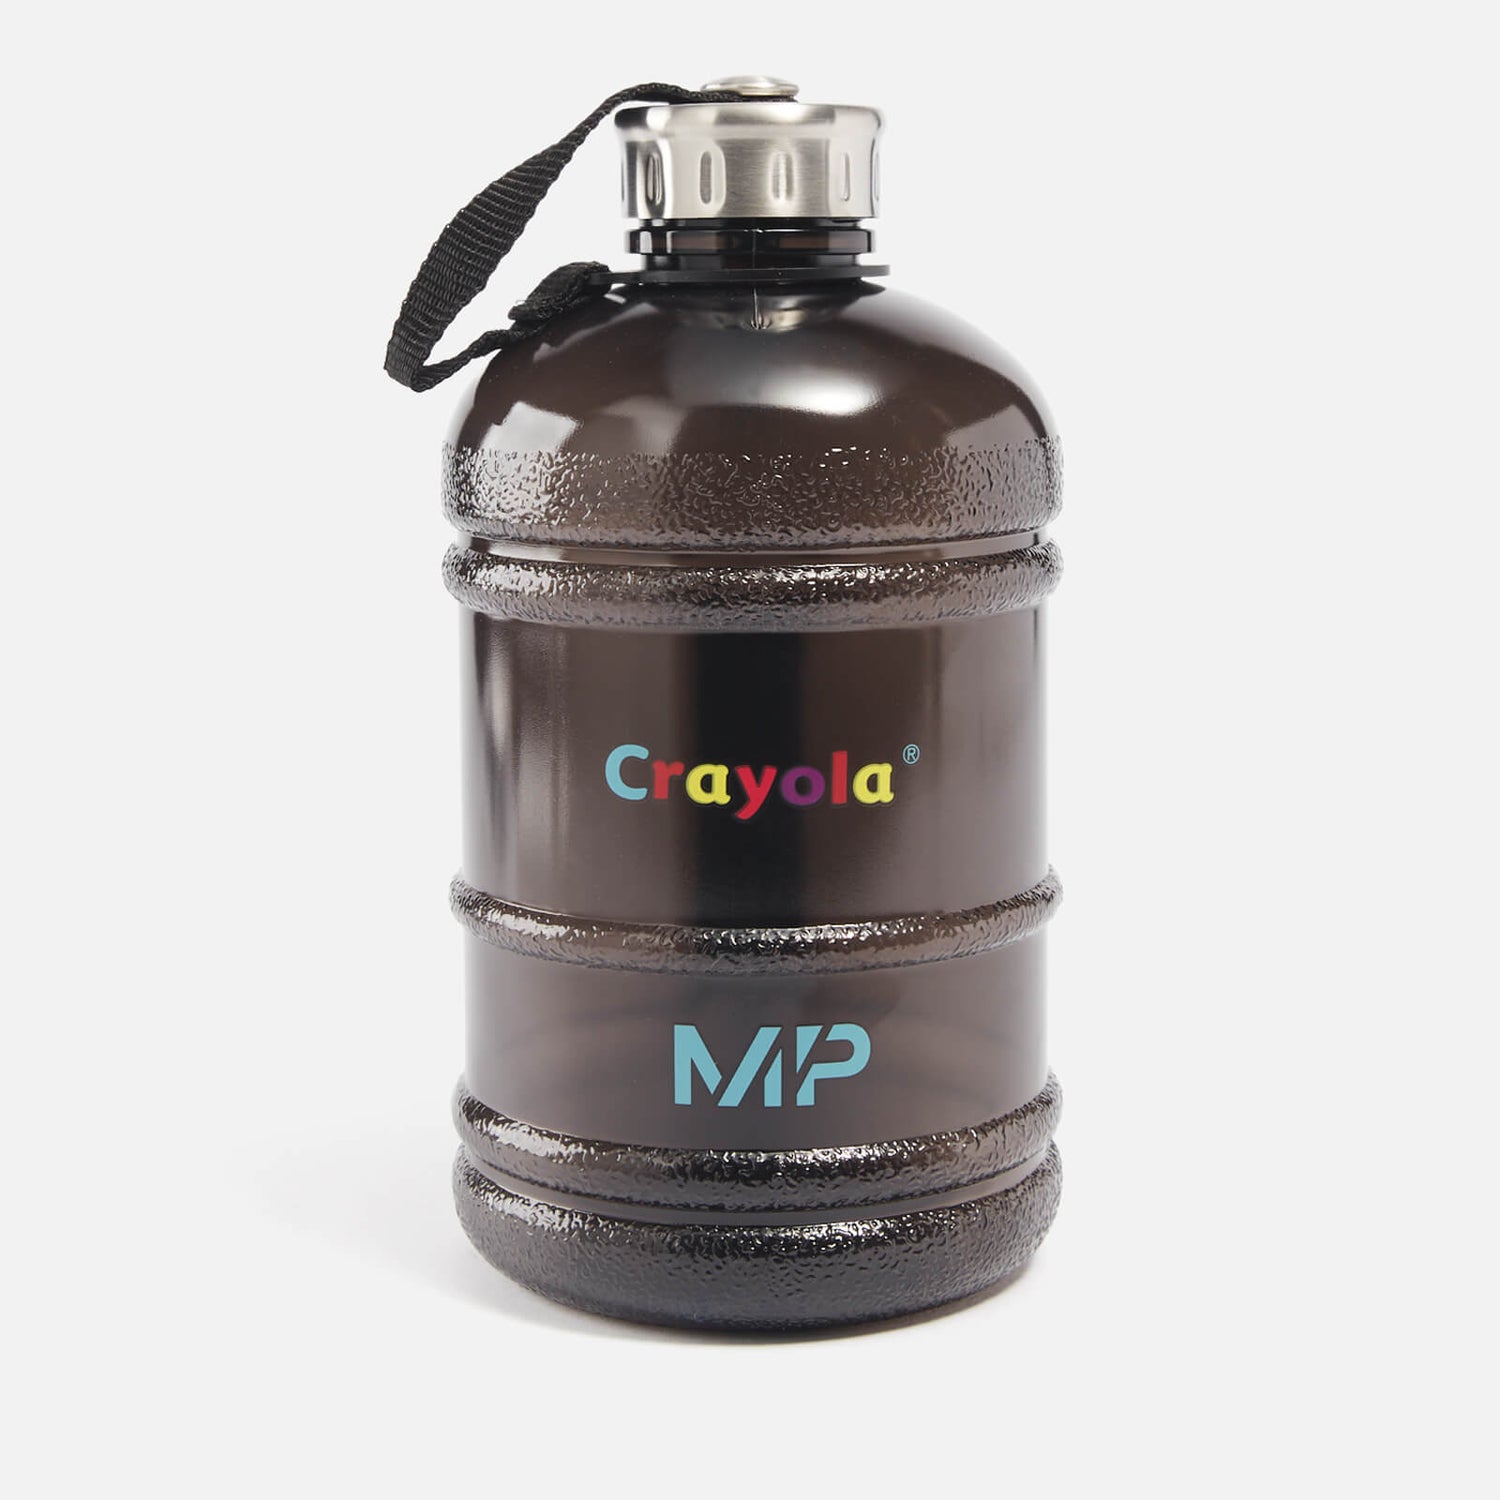 Crayola绘儿乐图案系列超大号运动水壶 - 黑色